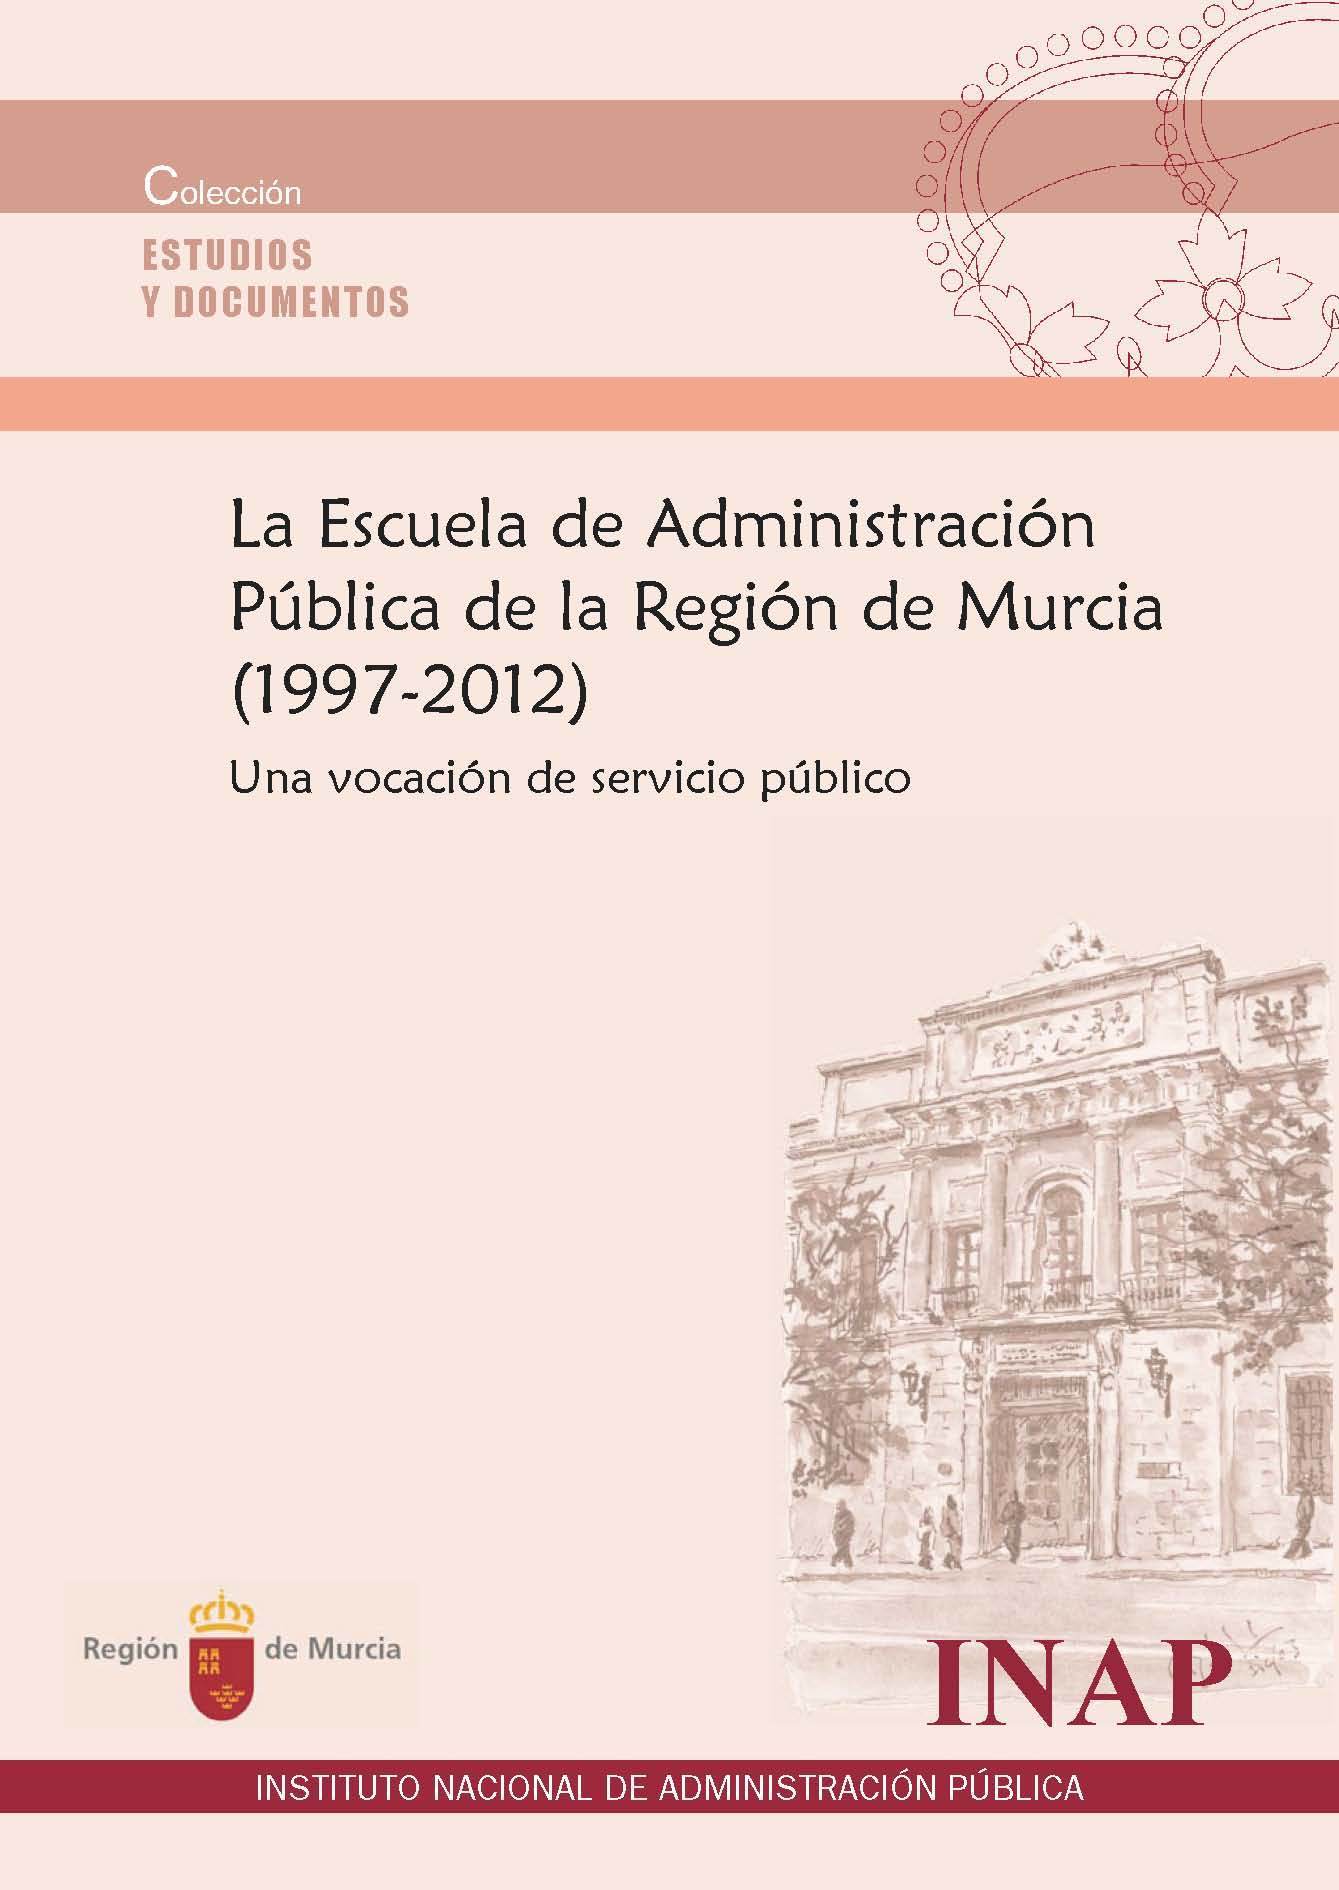 La Escuela de Administración Pública de la Región de Murcia (1997-2012)